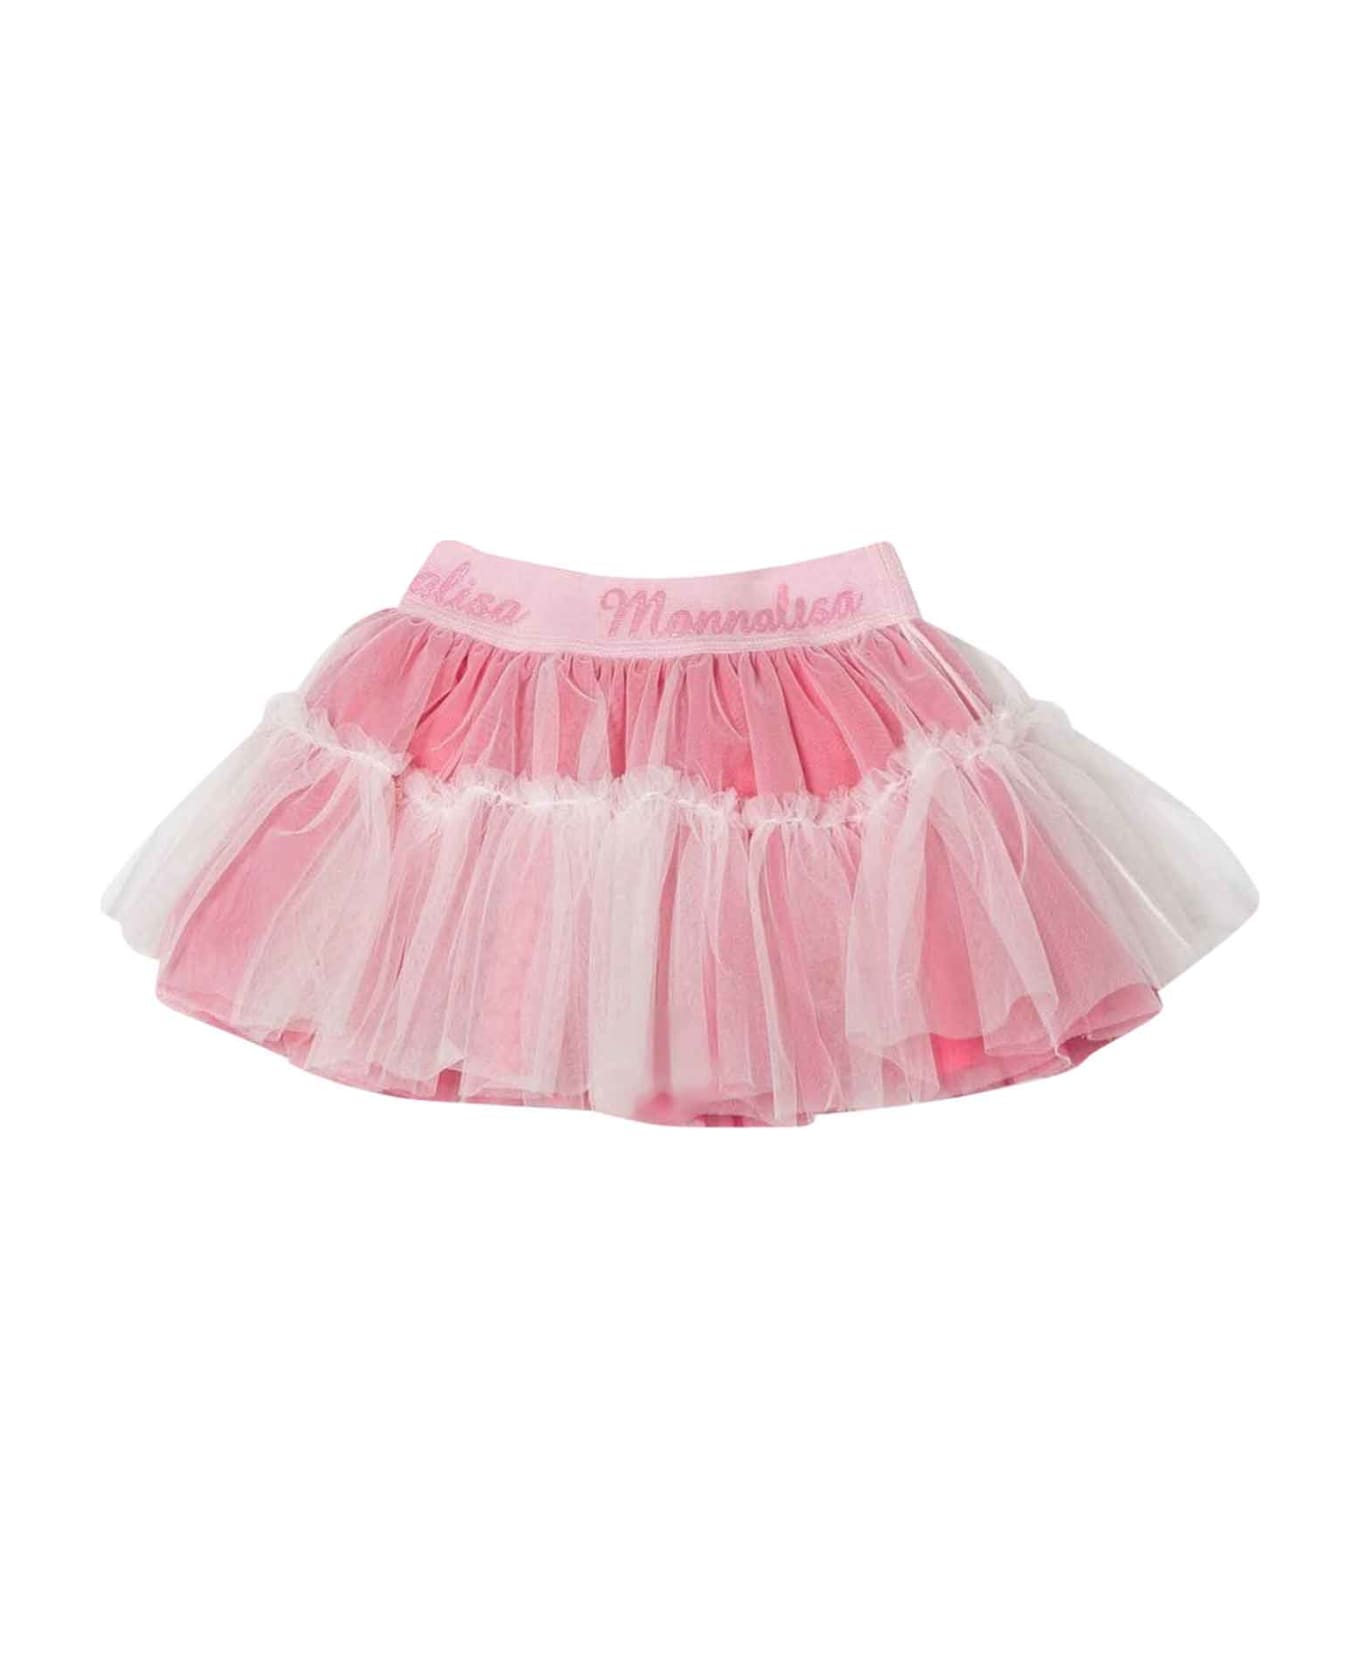 Monnalisa Pink Skirt Baby Girl - PINK